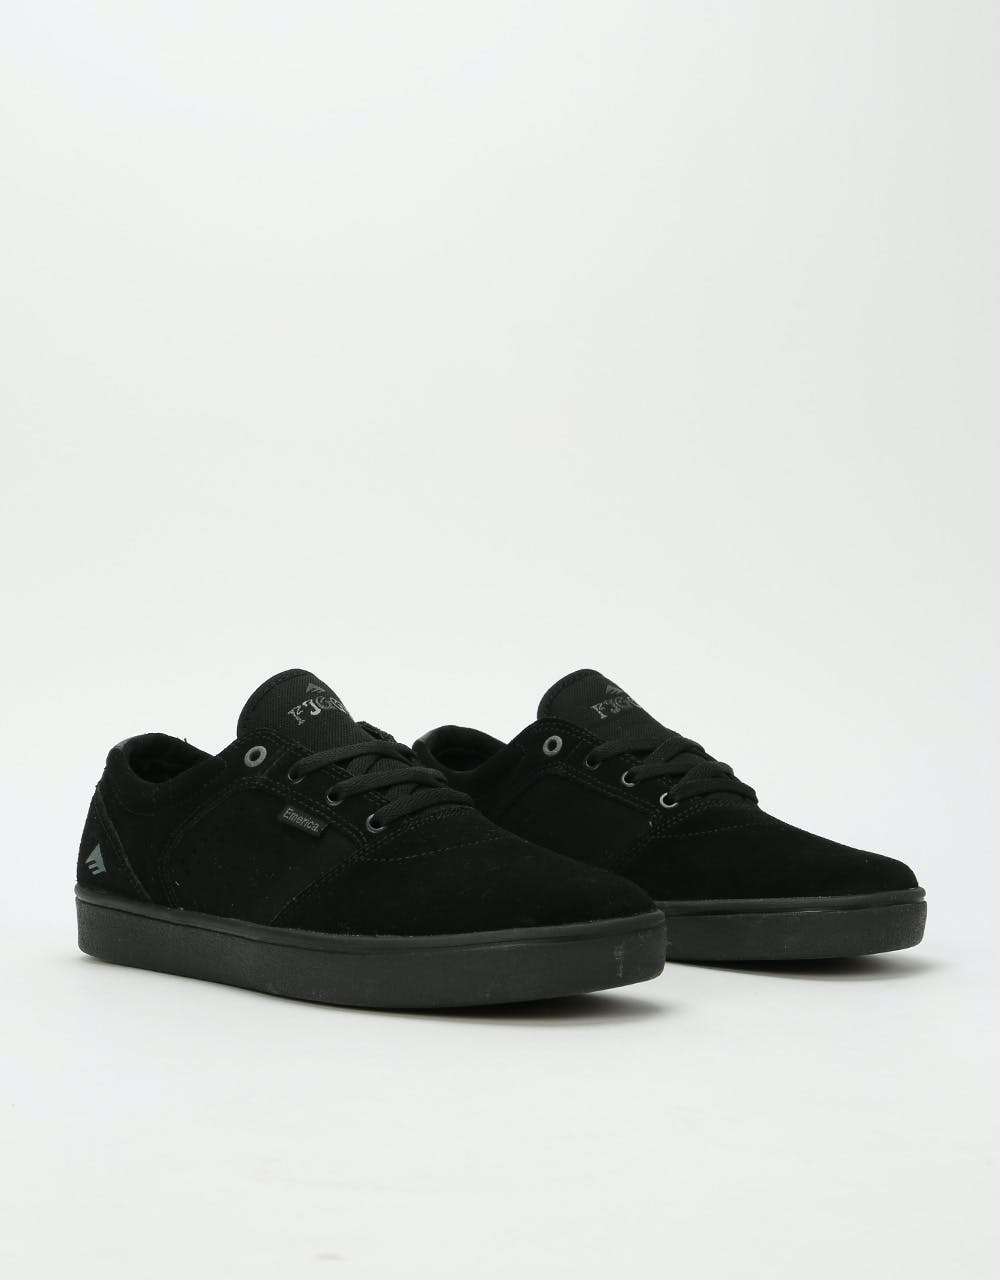 Emerica Figgy Dose Skate Shoes - Black/Black/Gum